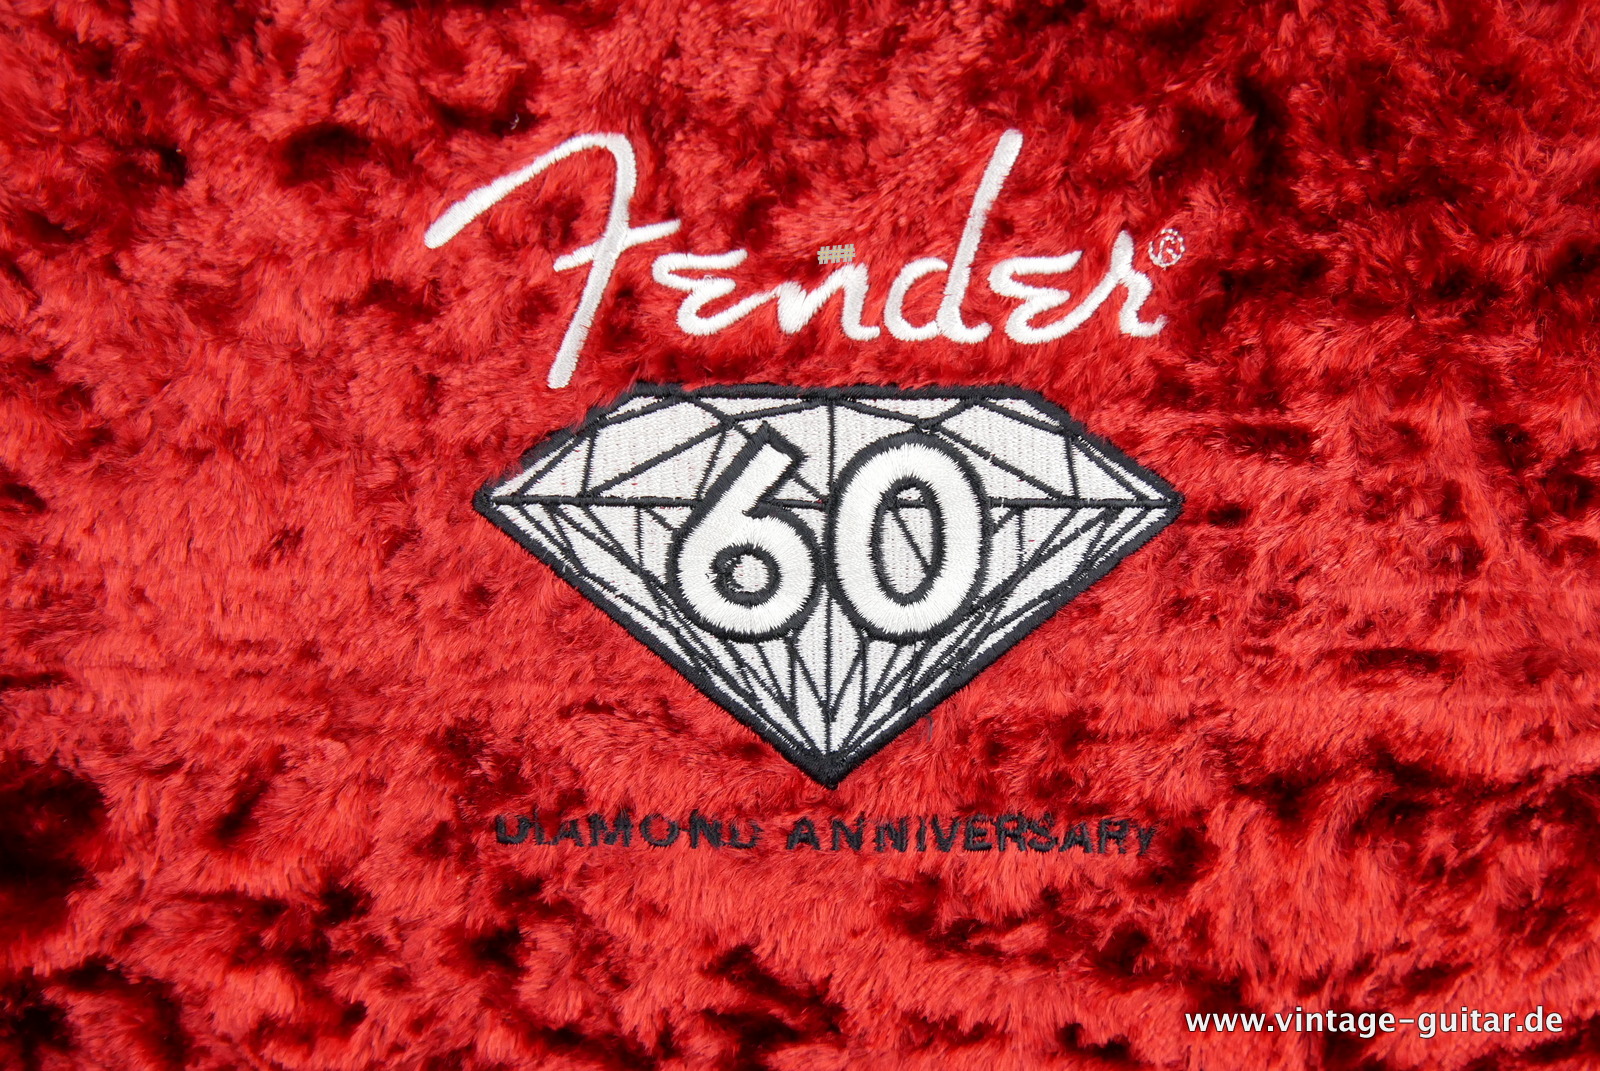 Fender_Stratocaster_American_Series_Diamond_Anniversary_60th_Left_handed_USA_sunburst-019.JPG